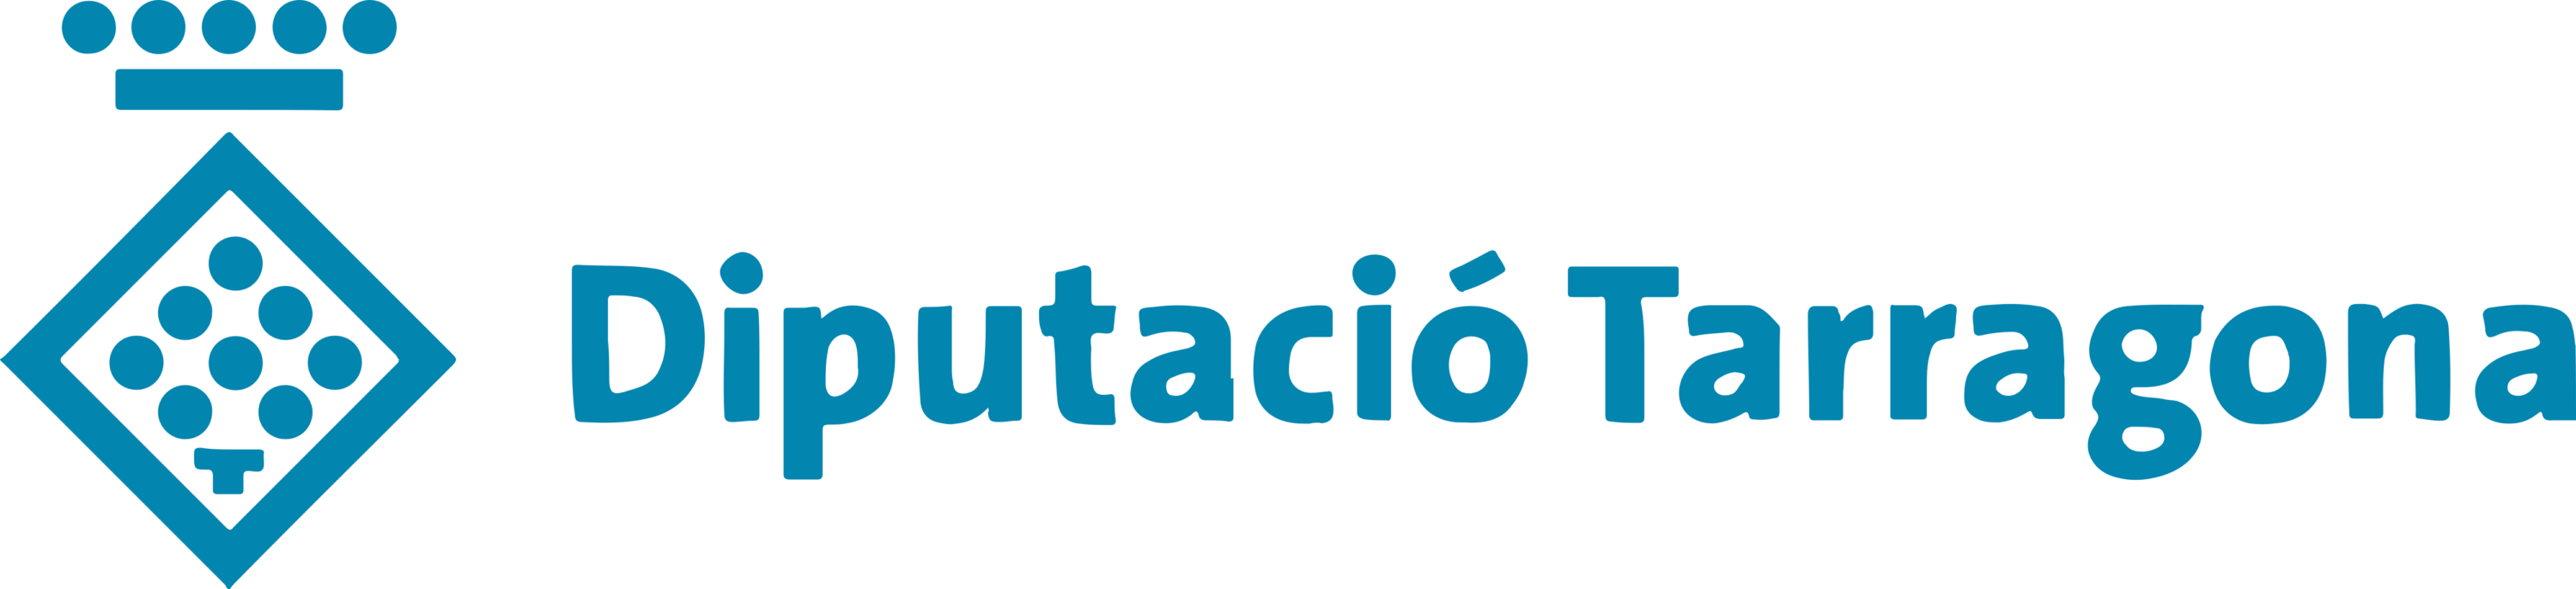 Diputacio de Tarragona Logo